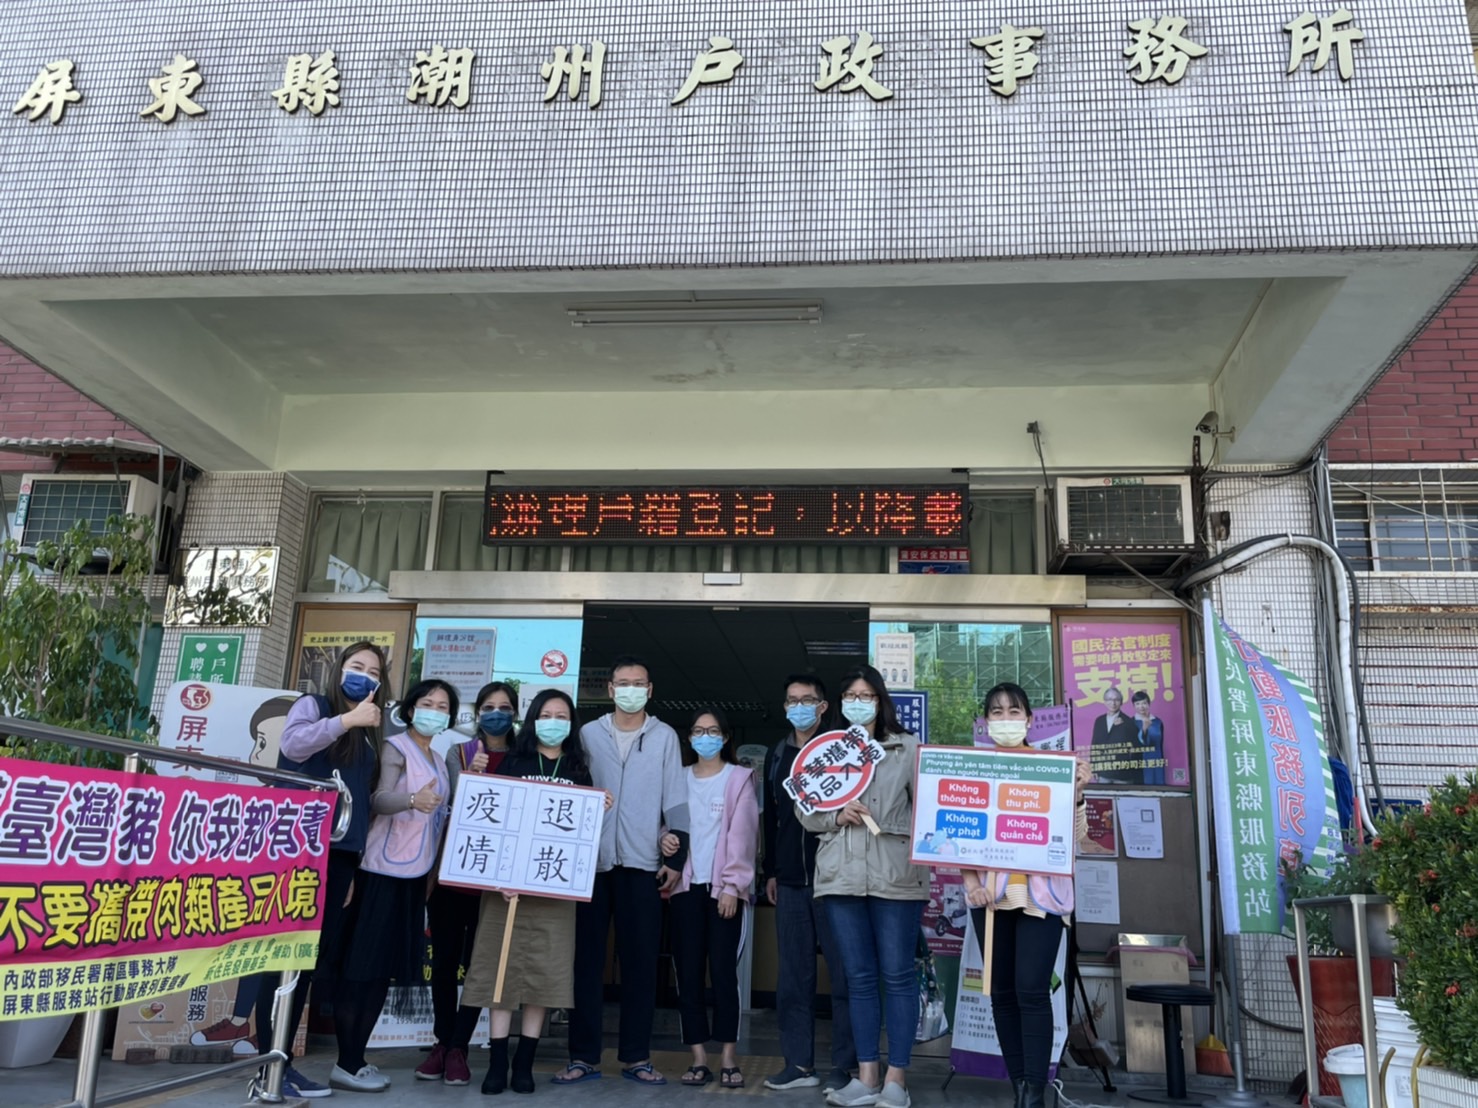 Kantor Imigrasi Pingtung bersama dengan Kantor Chaozhou untuk mempublikasikan proyek vaksin bagi para migran. Sumber: Stasiun Layanan Kabupaten Pingtung